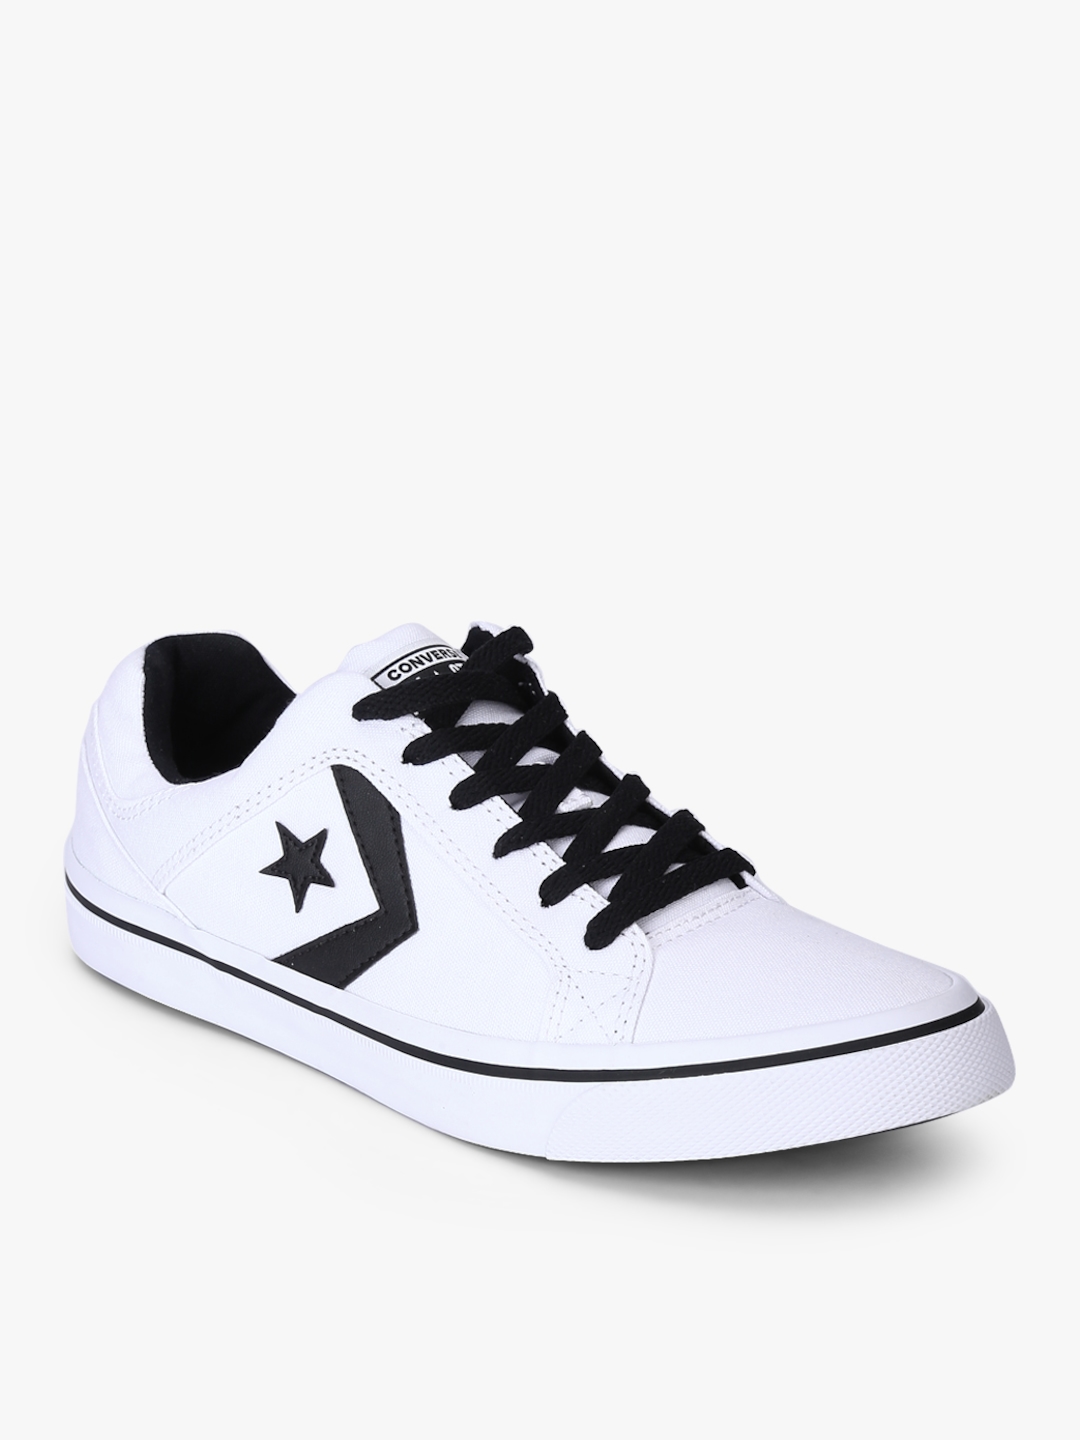 Buy Converse Men Cons El Distrito White Sneakers - Casual Shoes for Men  7924865 | Myntra